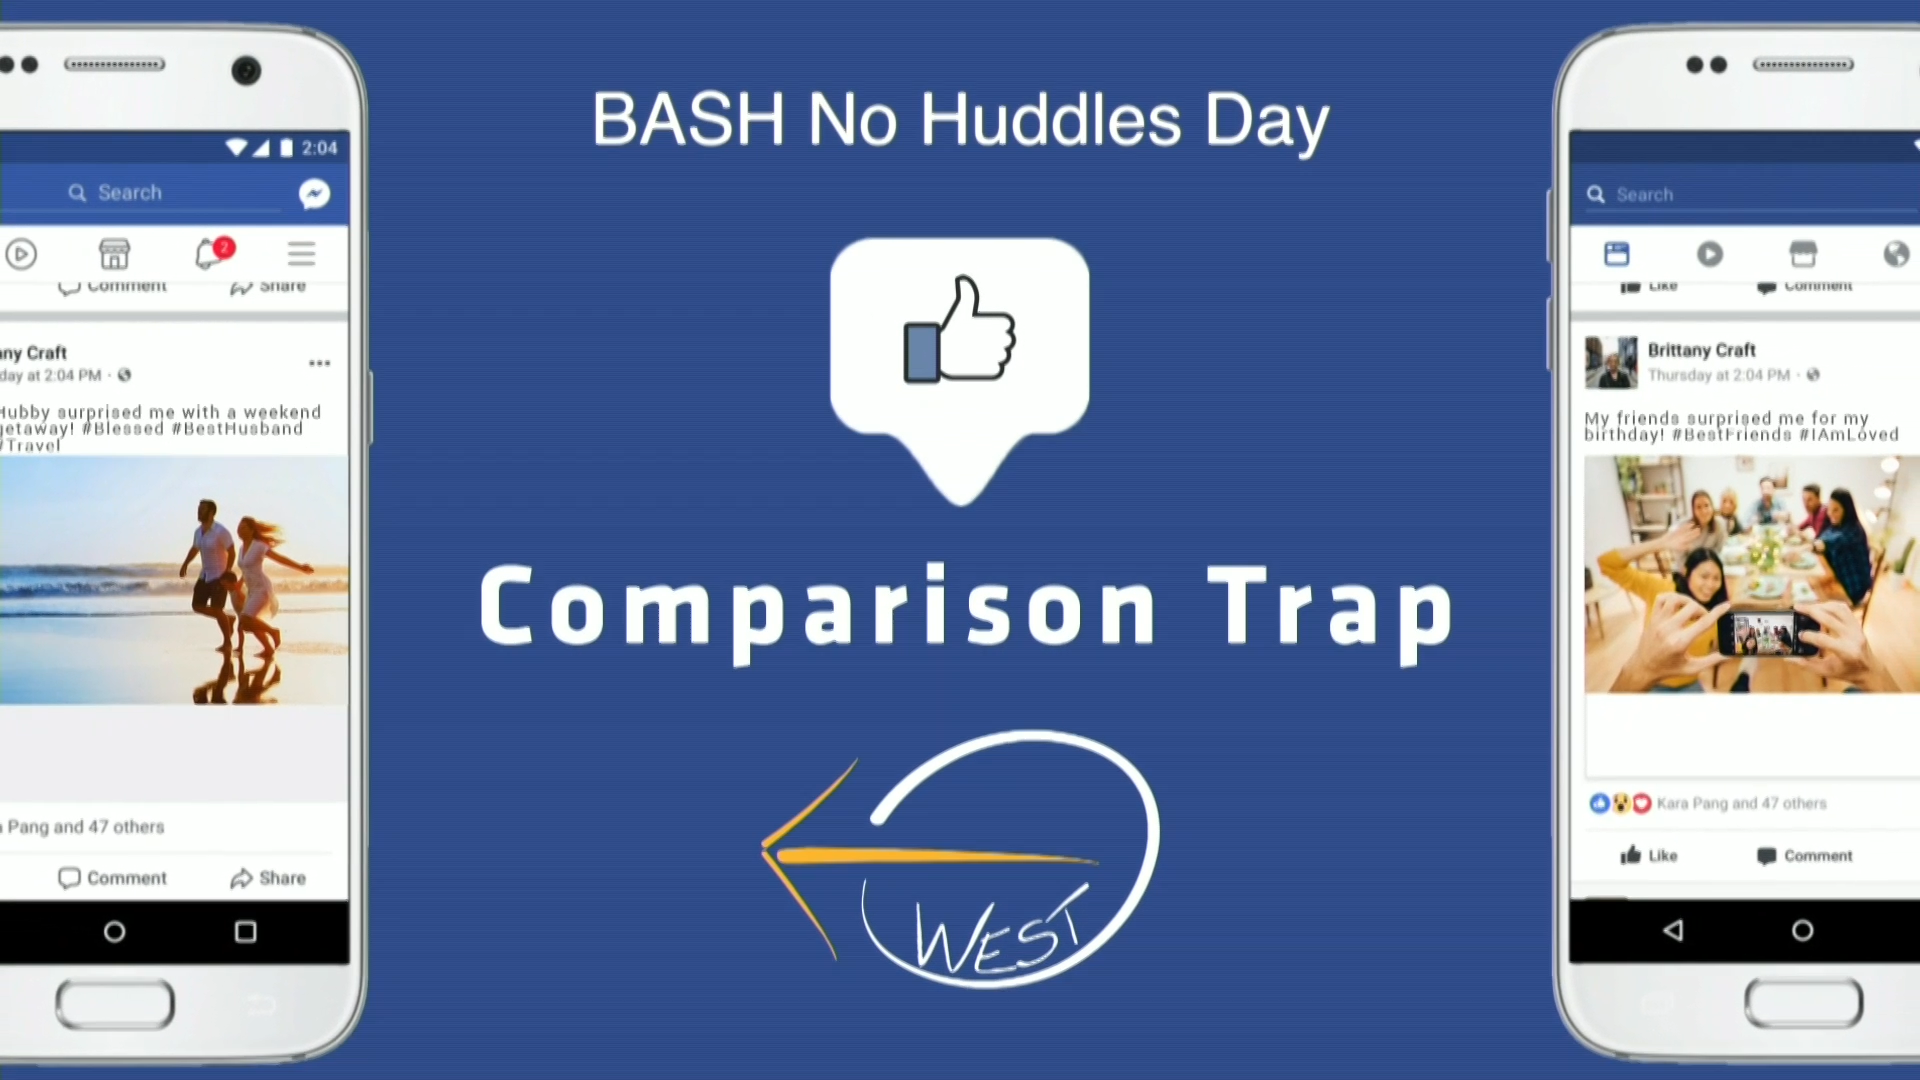 BASH No Huddles Day